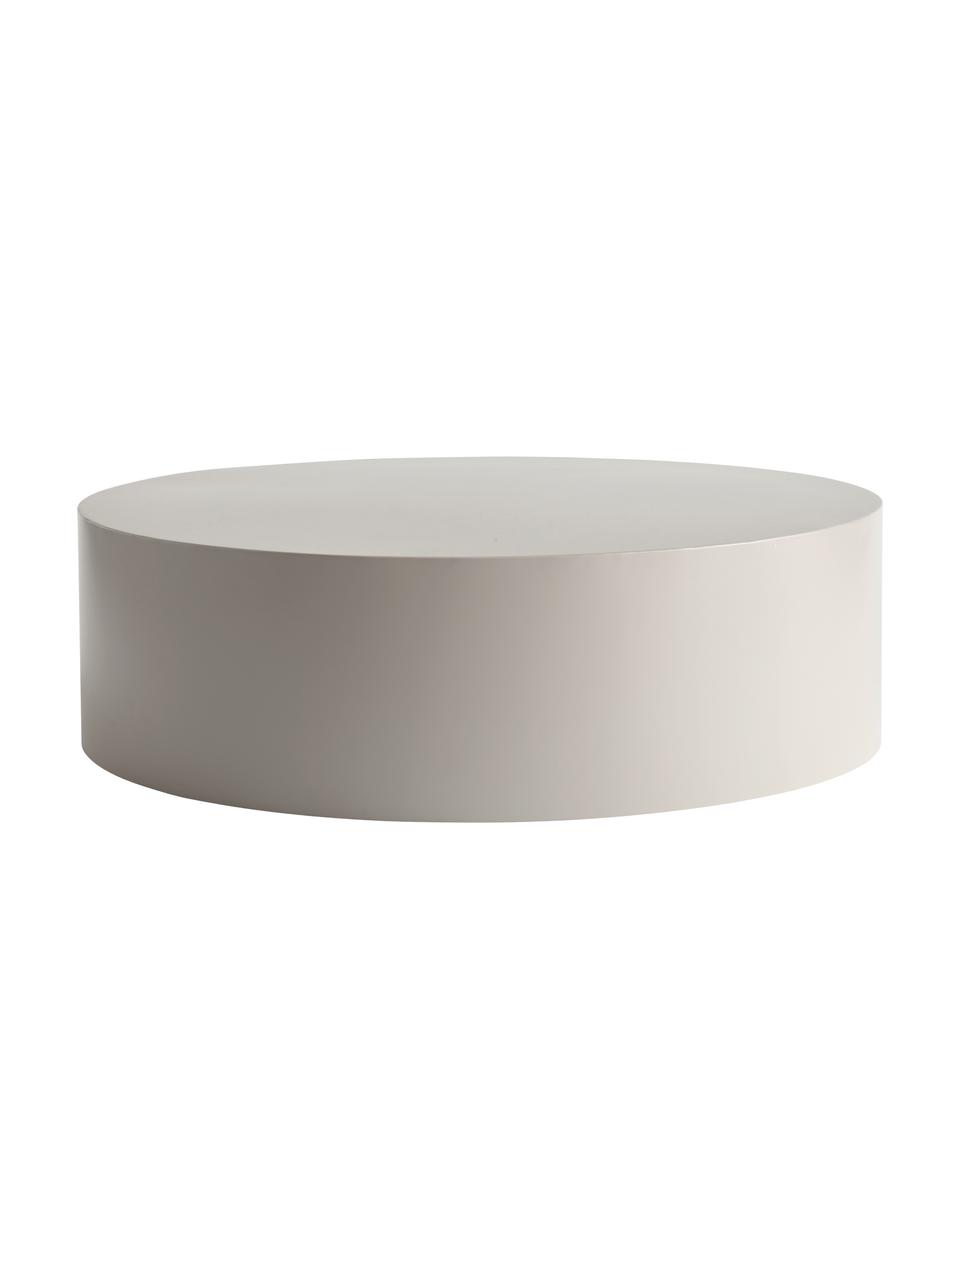 Tavolino rotondo da salotto in metallo grigio chiaro Metdrum, Metallo, Grigio chiaro, Ø 85 x Alt. 25 cm